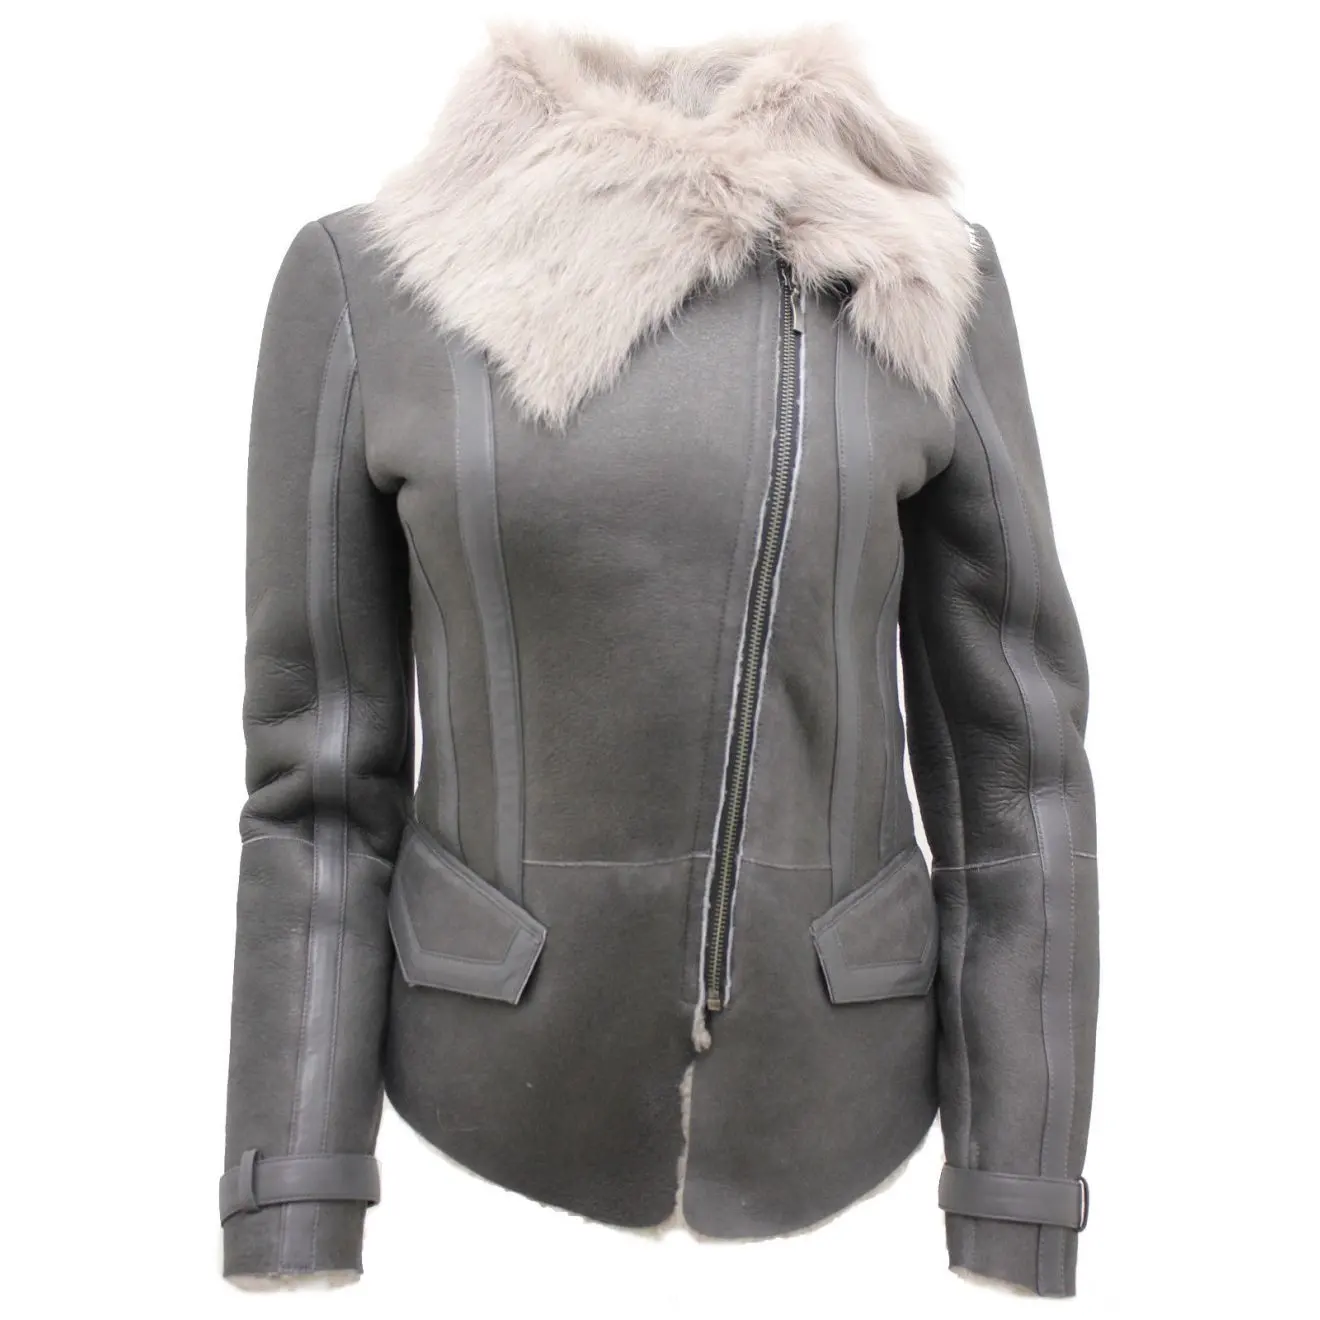 Jaqueta feminina cinza e macia de couro, casaco de couro com pele de carneiro personalizado pelos fabricantes